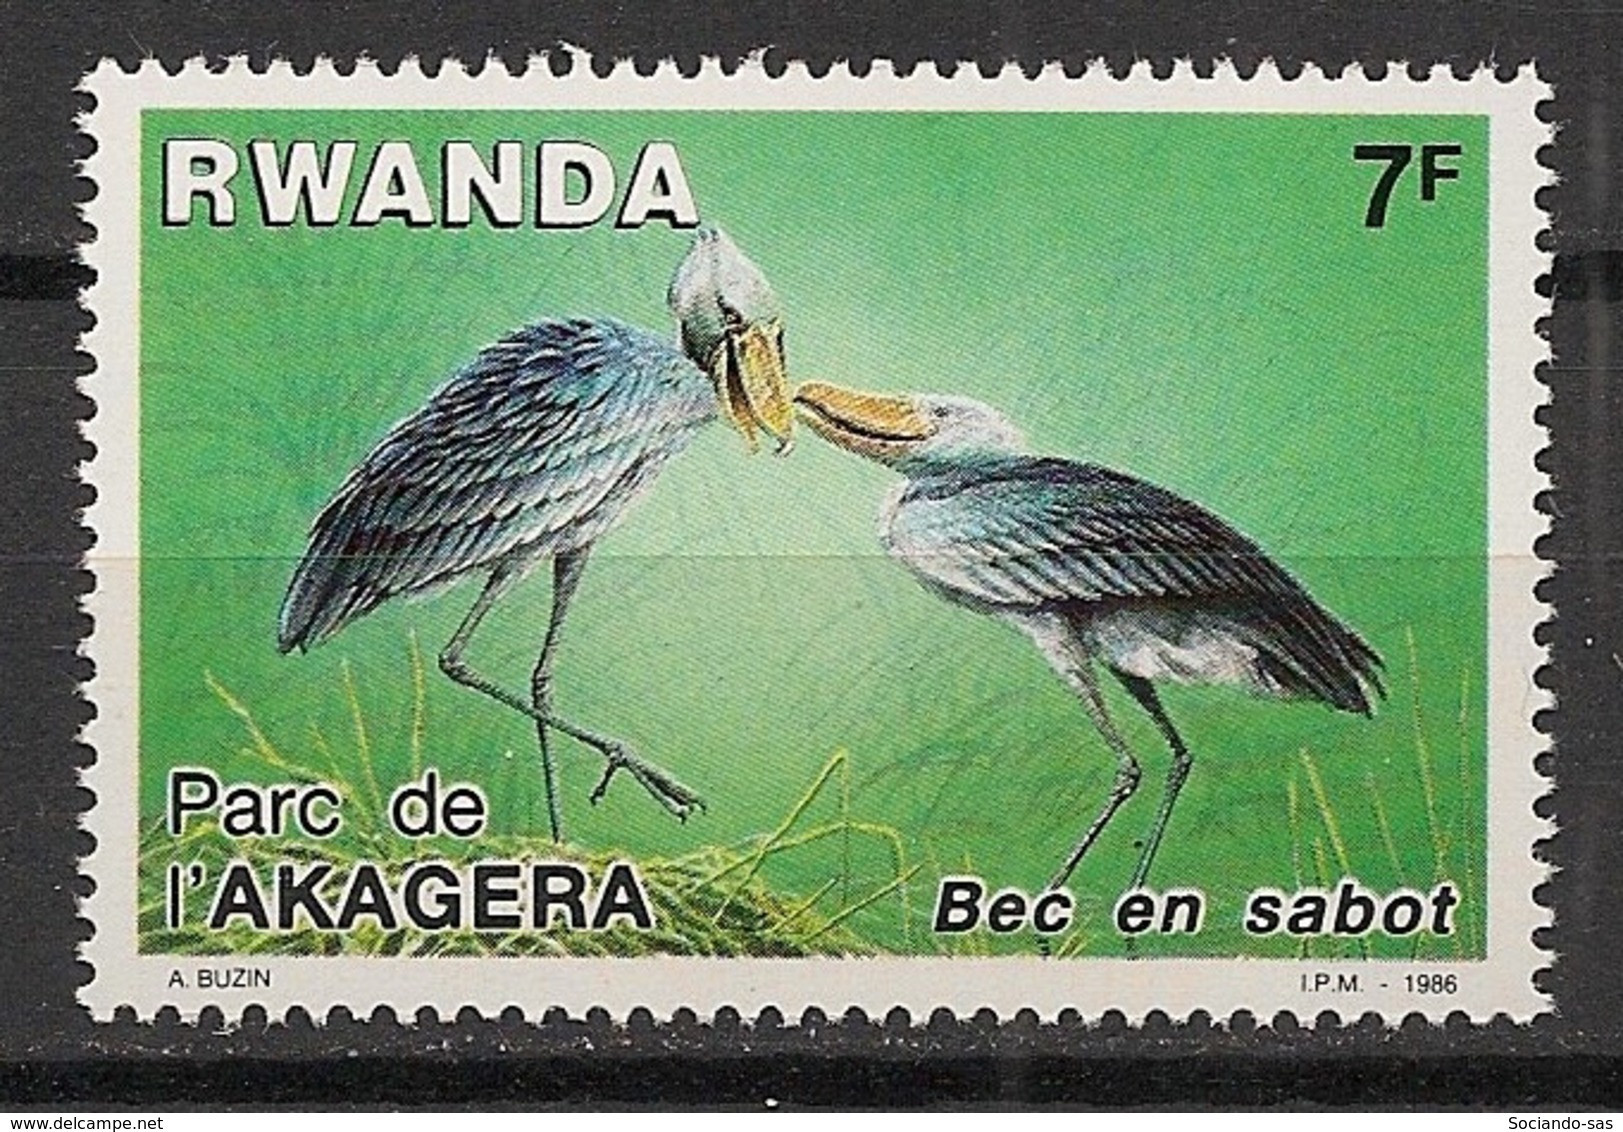 RWANDA - 1986 - N°YT. 1218 - Oiseau / Bird / Bec En Sabot - Neuf Luxe ** / MNH / Postfrisch - Unused Stamps